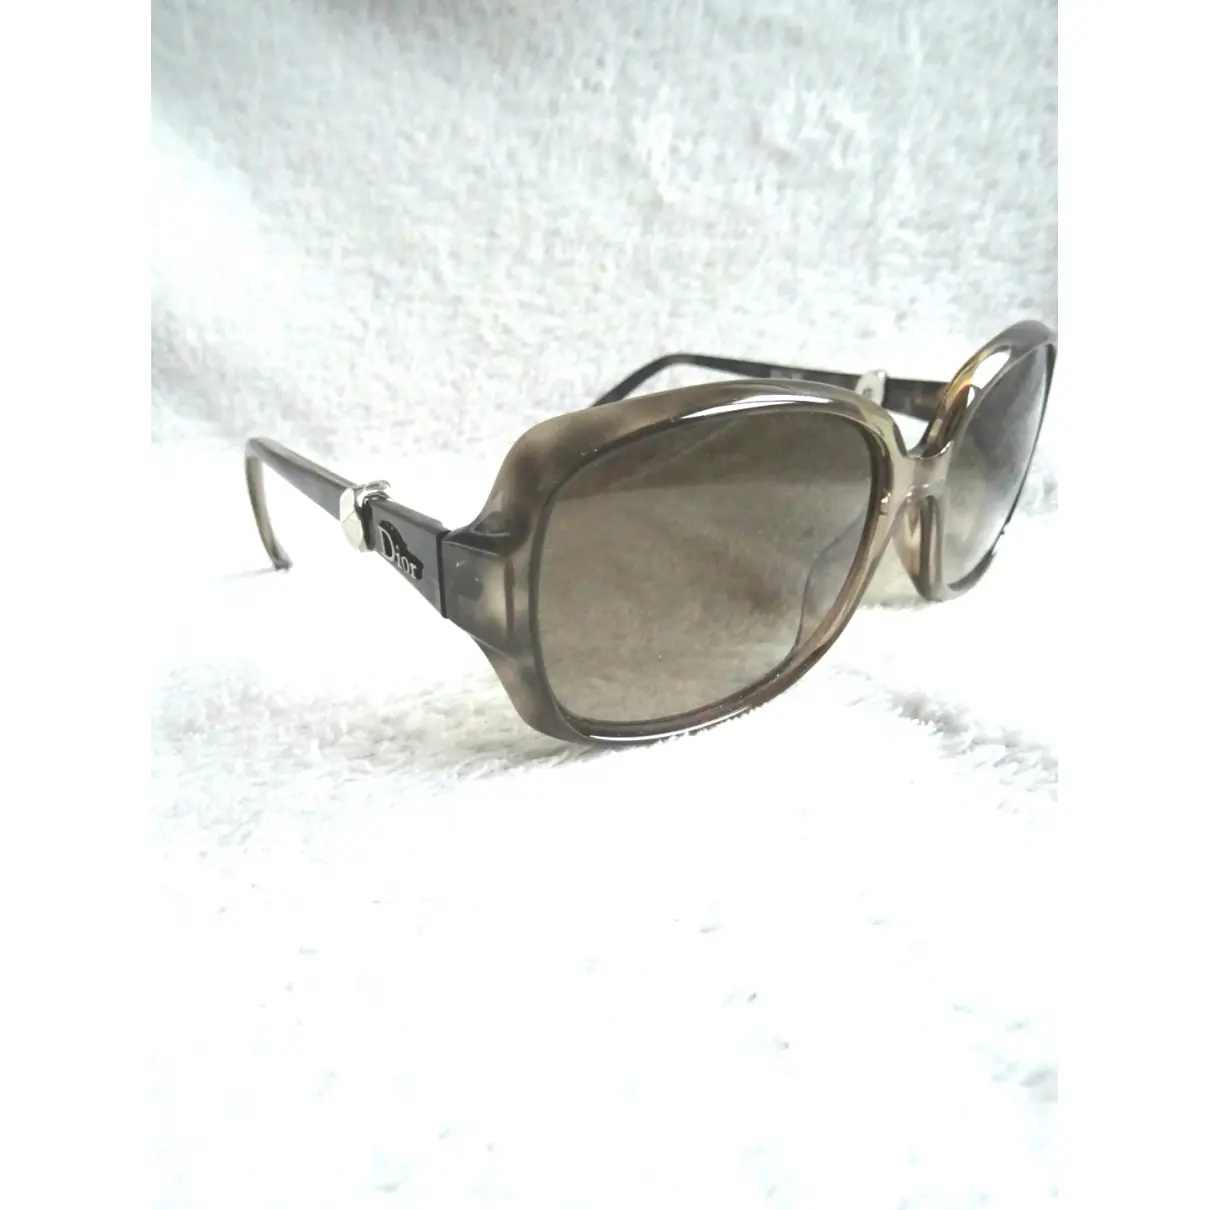 Buy Dior Oversized sunglasses online - Vintage